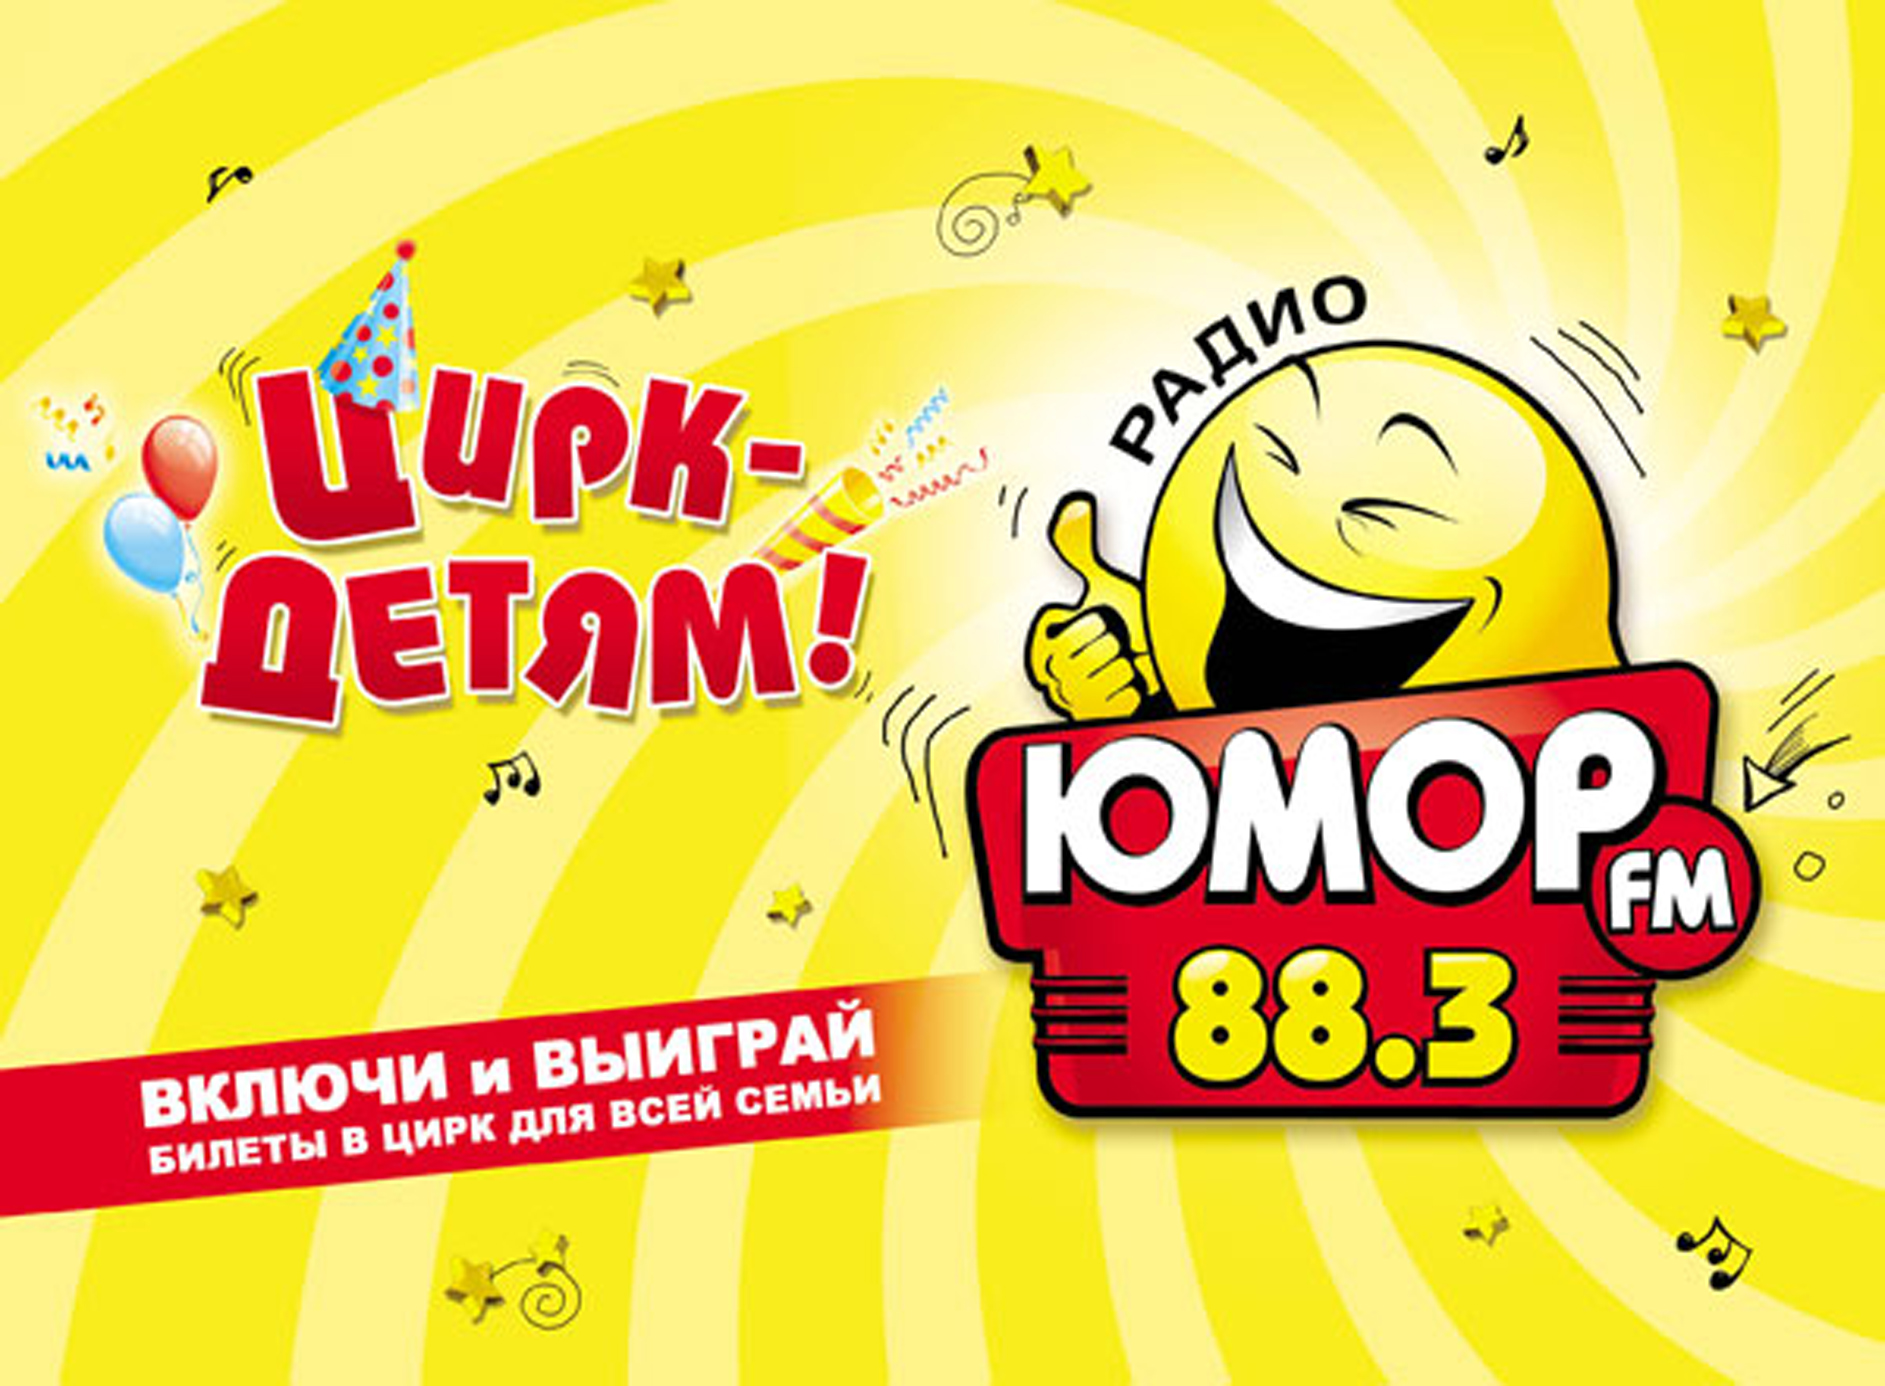 Юмор fm. Юмор ФМ логотип. Радио юмор ФМ. Юмор fm Москва. Радио юмор фм новосибирск